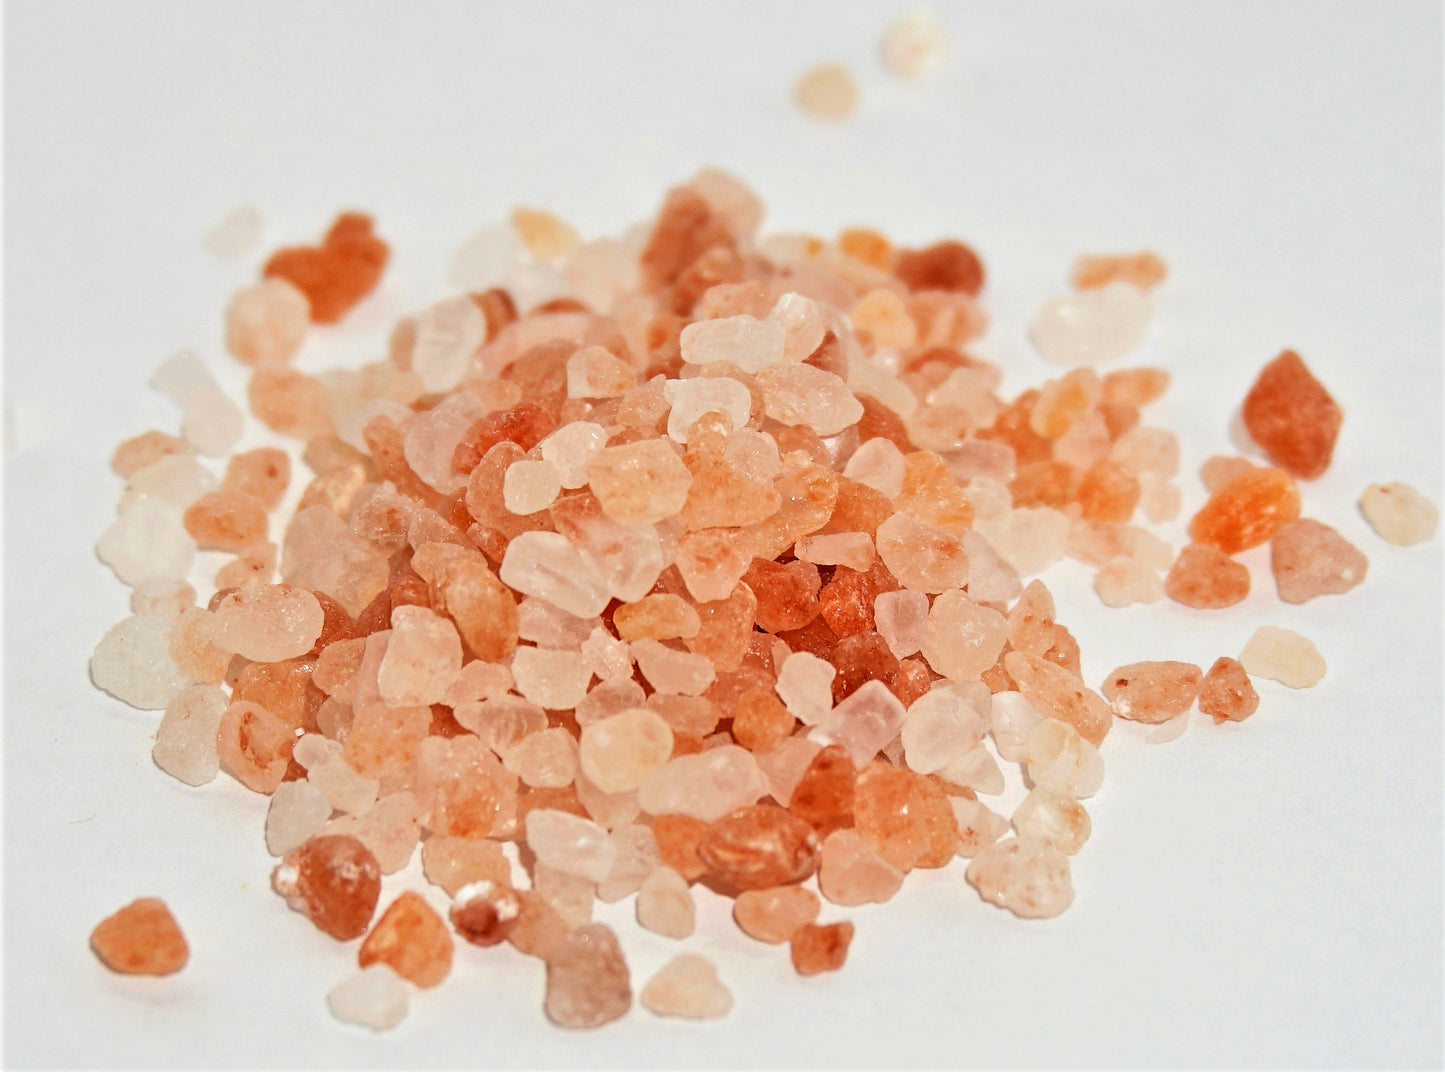 Himalayan Pink Salt (Coarse)